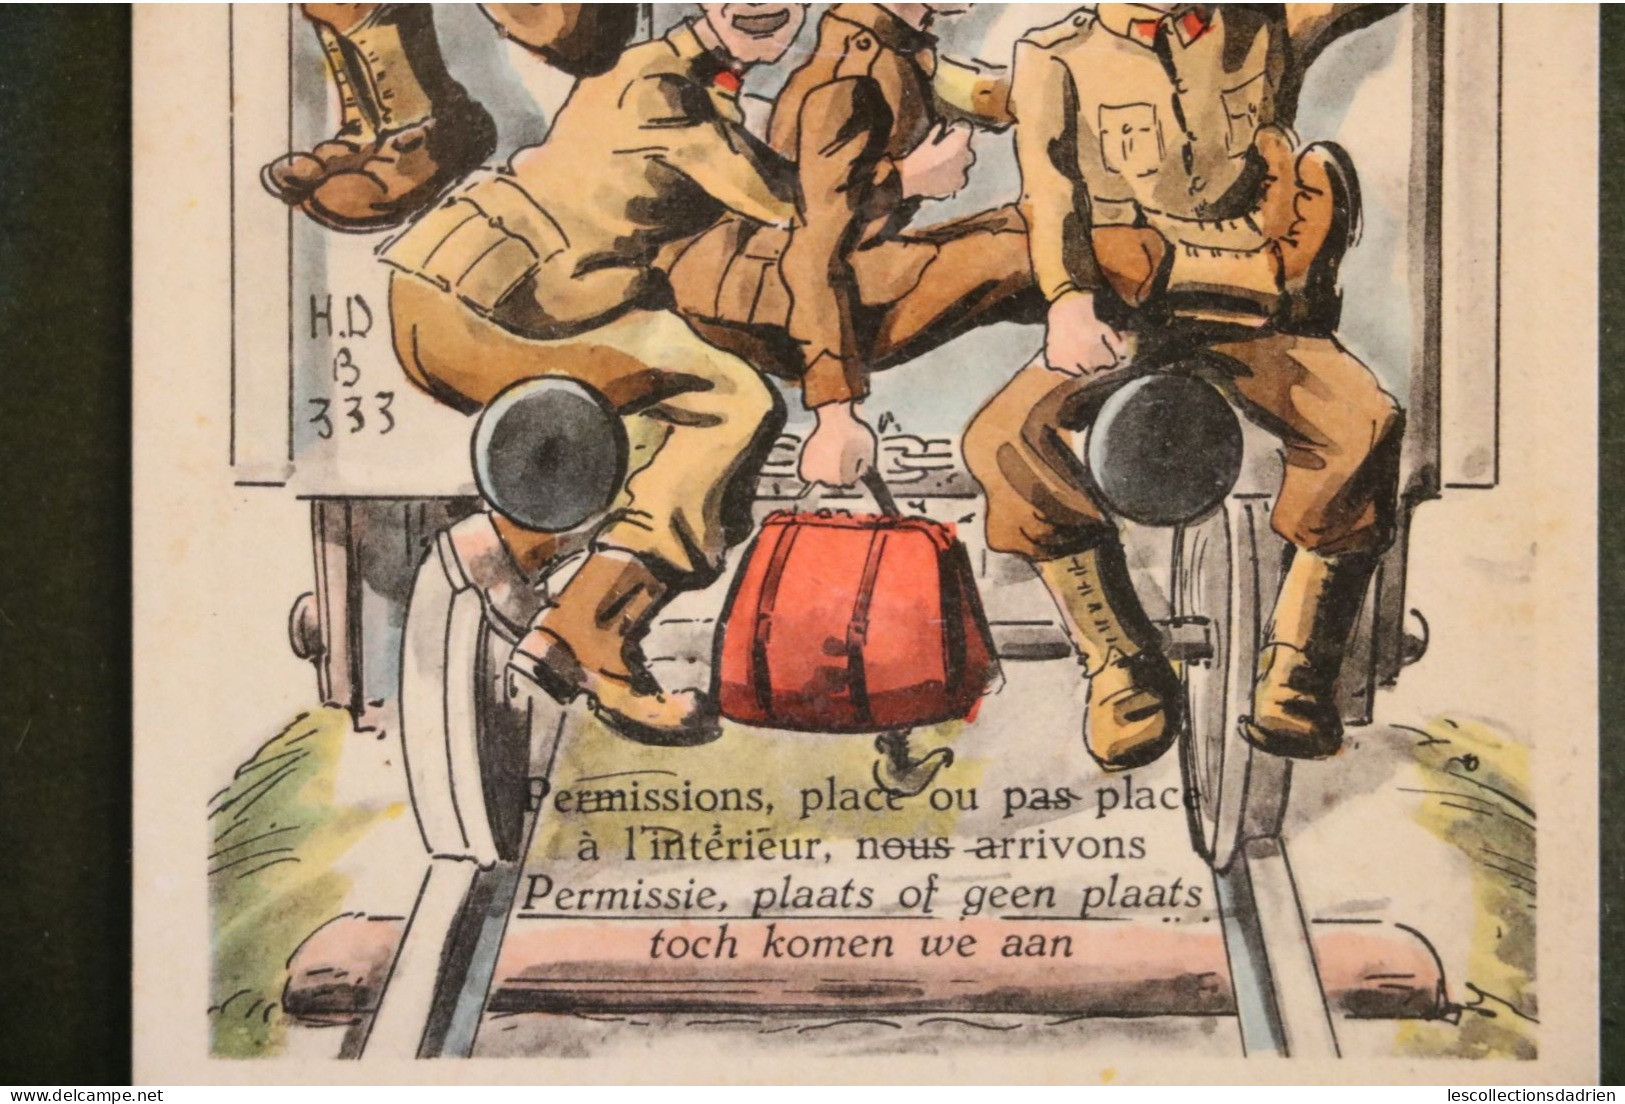 Carte Postale Humorisitque Militaires Soldats Permission Permissie Soldaten  H.d B 333 - Humour